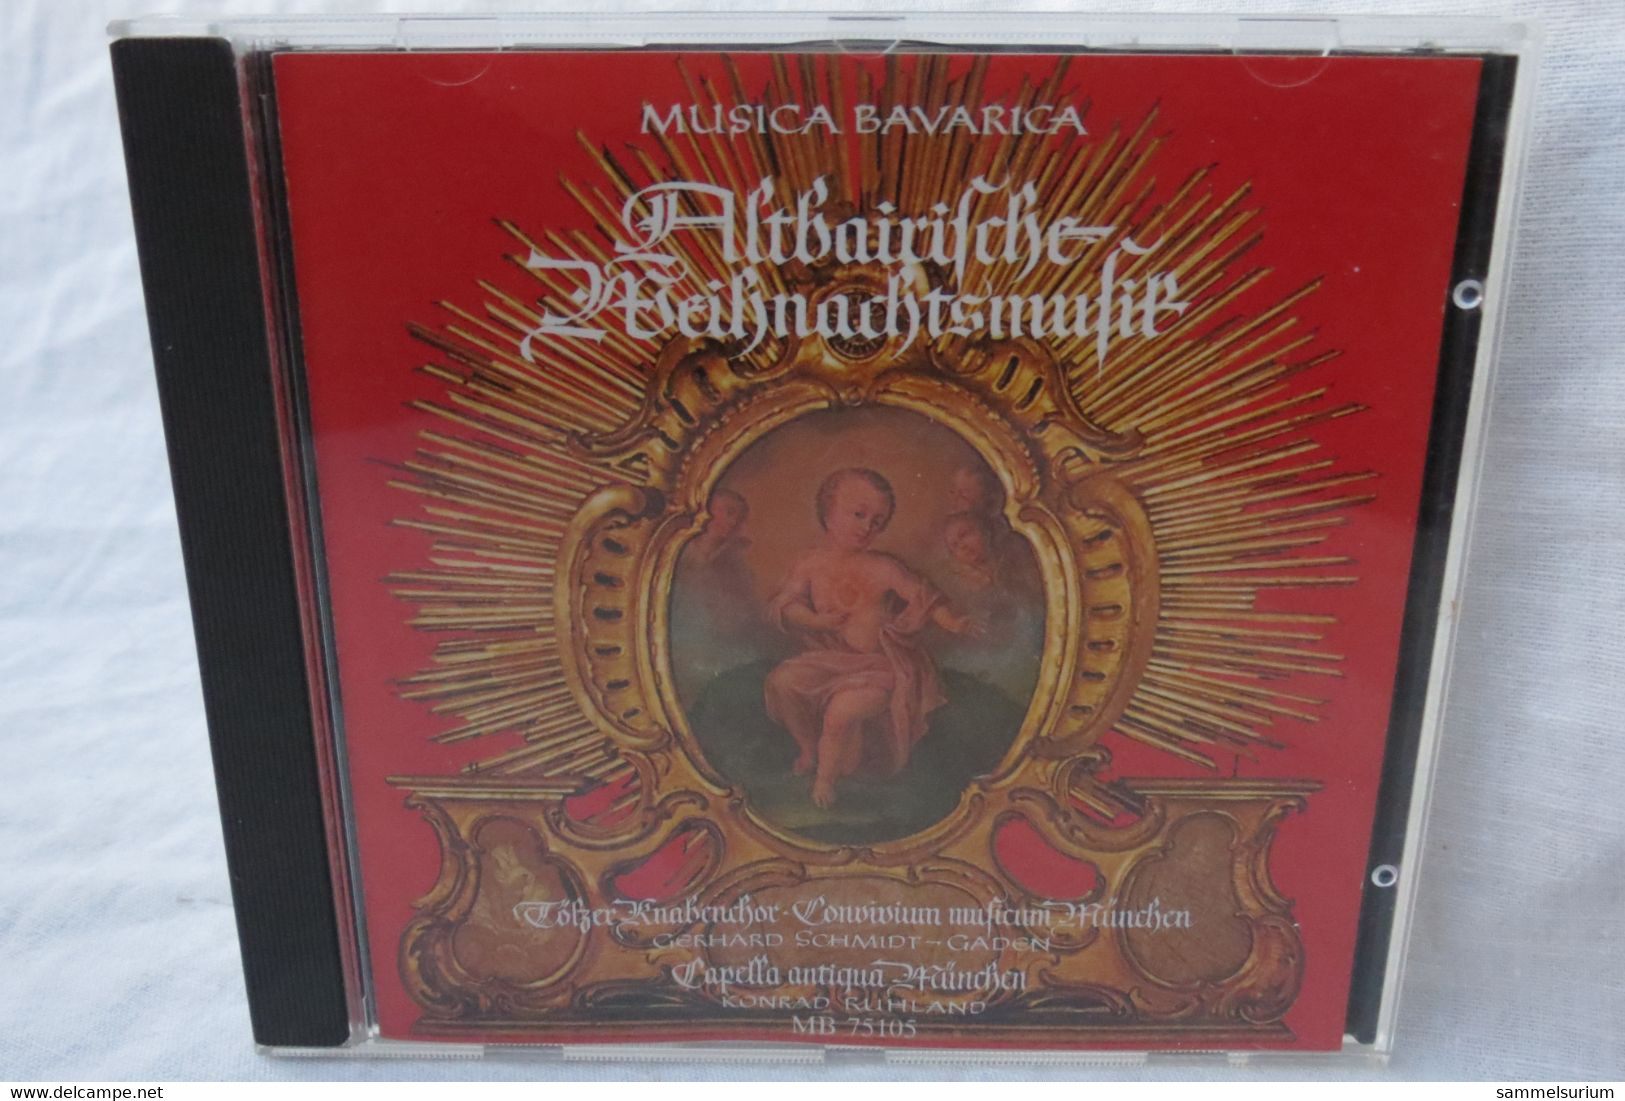 CD "Tölzer Knabenchor" Altbairische Weihnachtsmusik - Christmas Carols